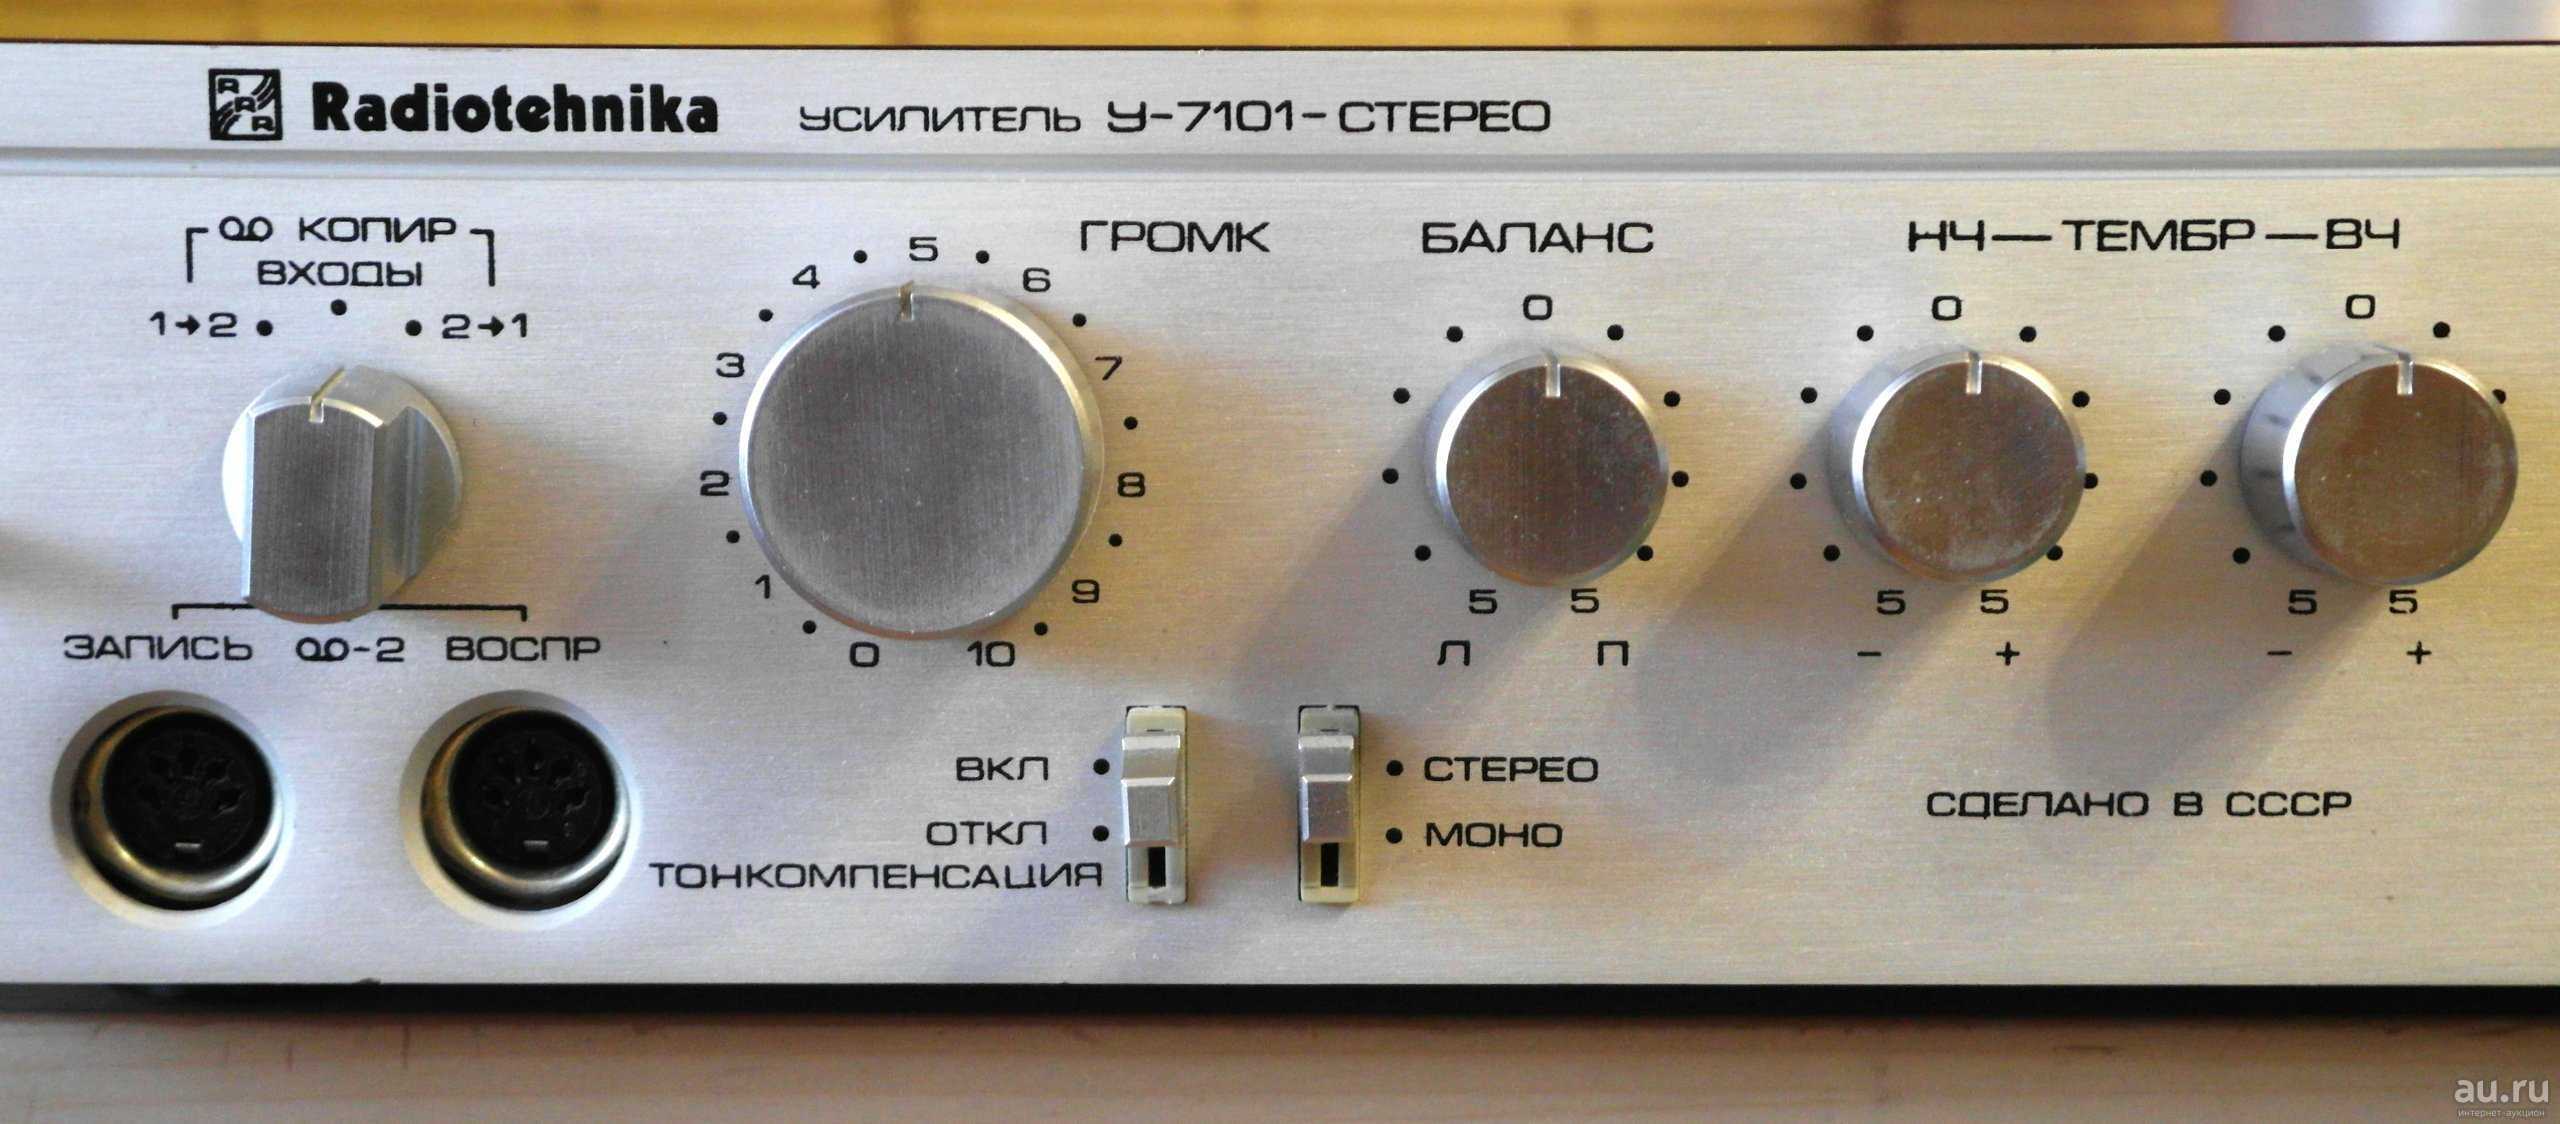 Стереопроигрыватели «радиотехника»: обзор моделей «радиотехника 001» и эп-101. как подключить проигрыватели винила?